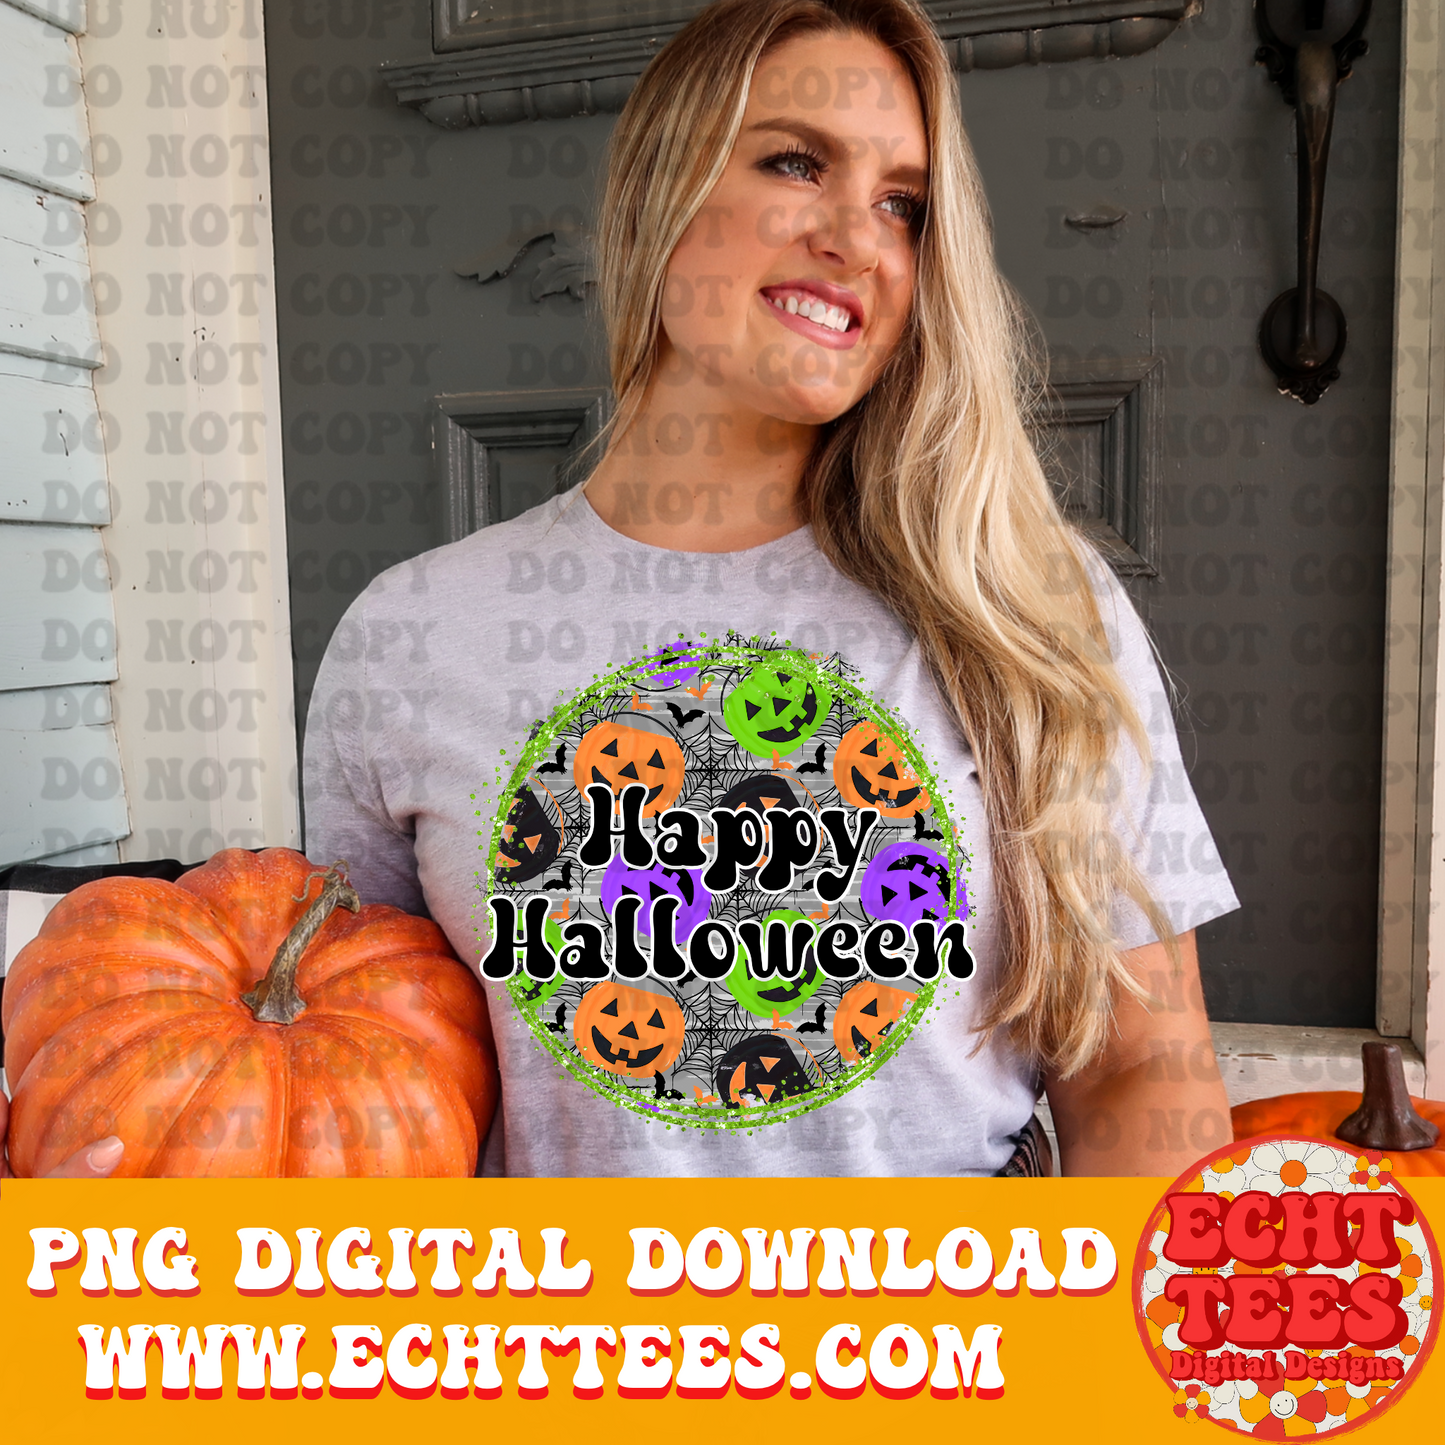 Happy Halloween PNG Digital Download